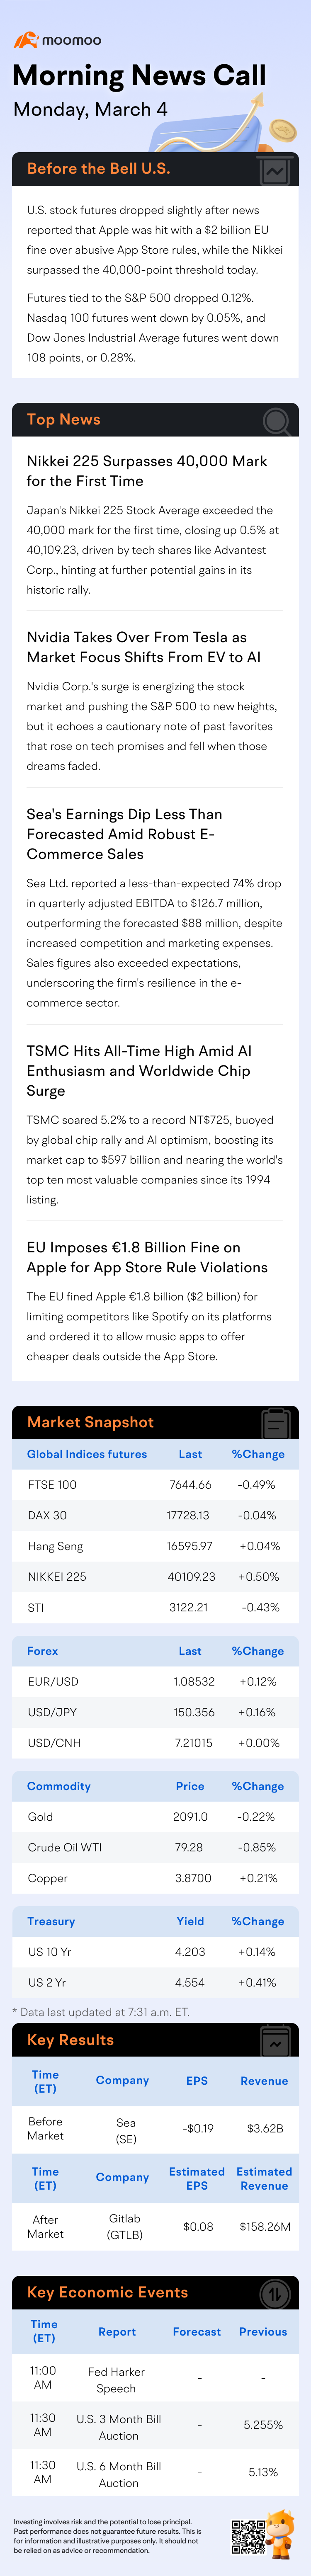 早间新闻电话会议 | 新闻报道苹果对欧盟处以20亿美元罚款后，股票期货小幅下跌